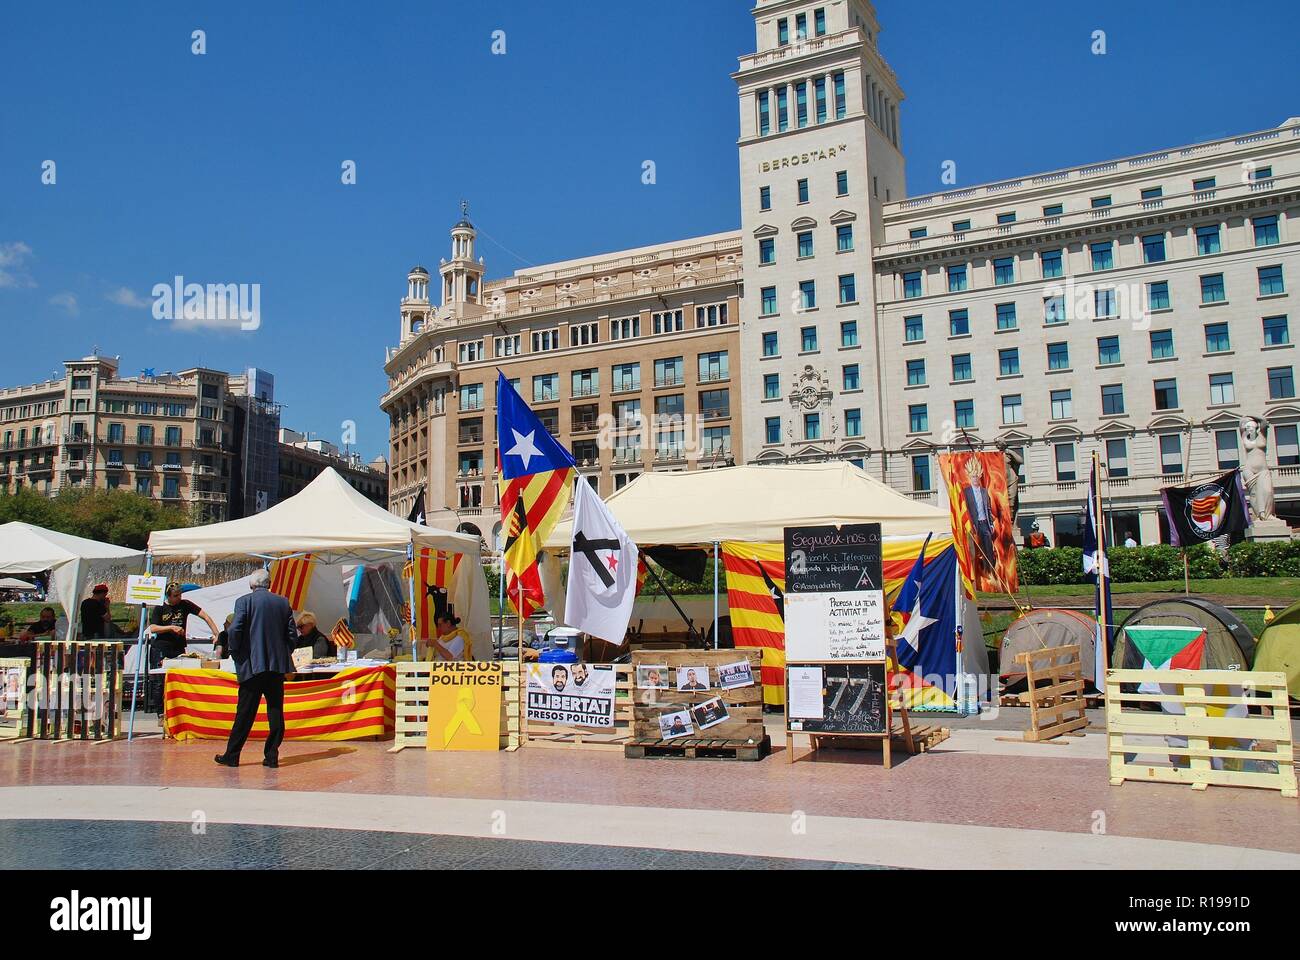 Aktivisten für die llibertat Presos Politik (politische Gefangene) Bewegung Kampagne in der Plaza Catalunya in Barcelona, Spanien am 17. April 2018. Stockfoto